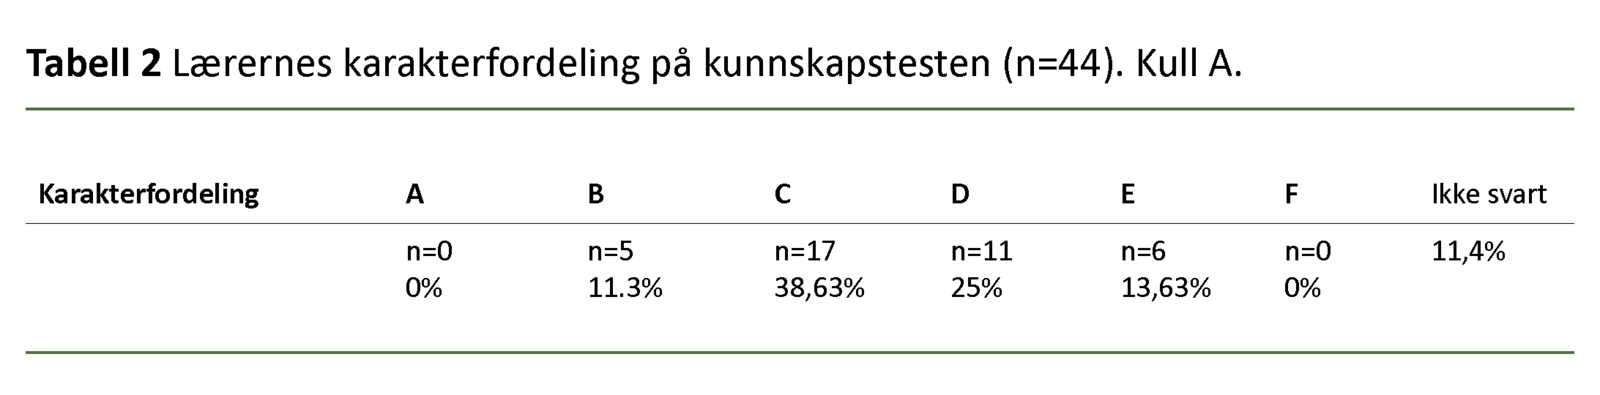 Tabell 2 – Lærernes karakterfordeling på kunnskapstesten i Kull A.